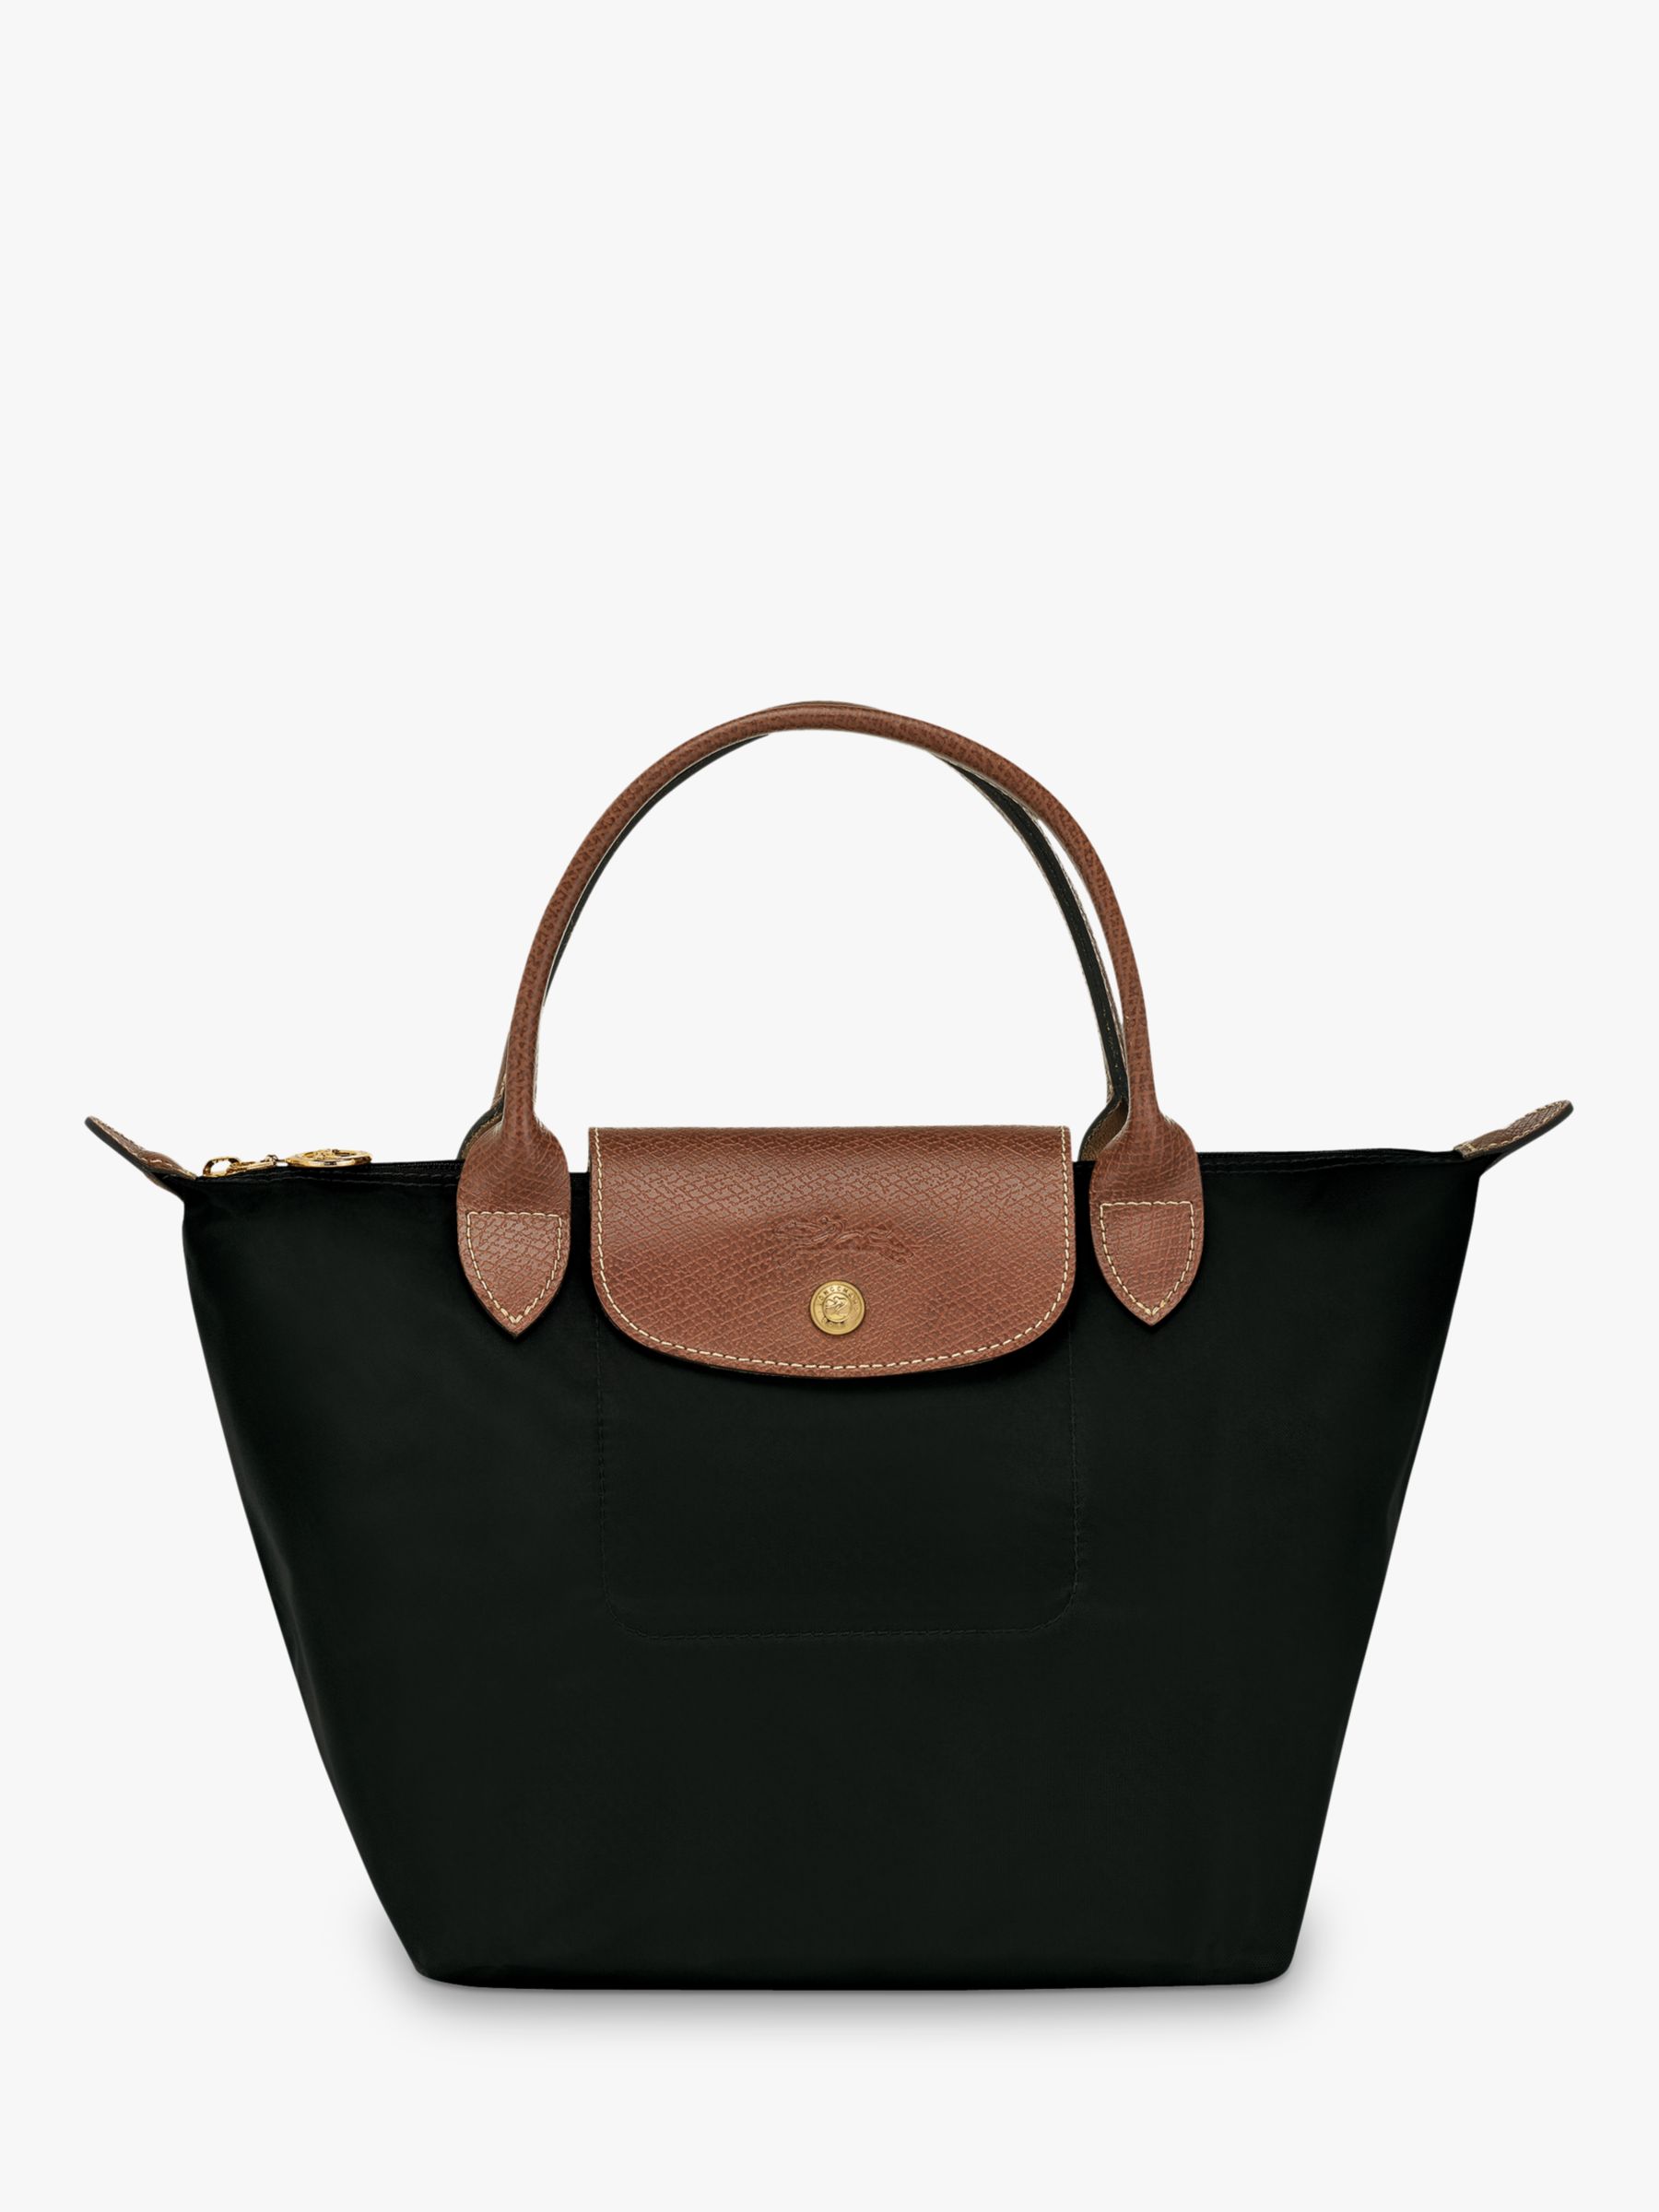 Discount Longchamp Tote Bags Store | website.jkuat.ac.ke